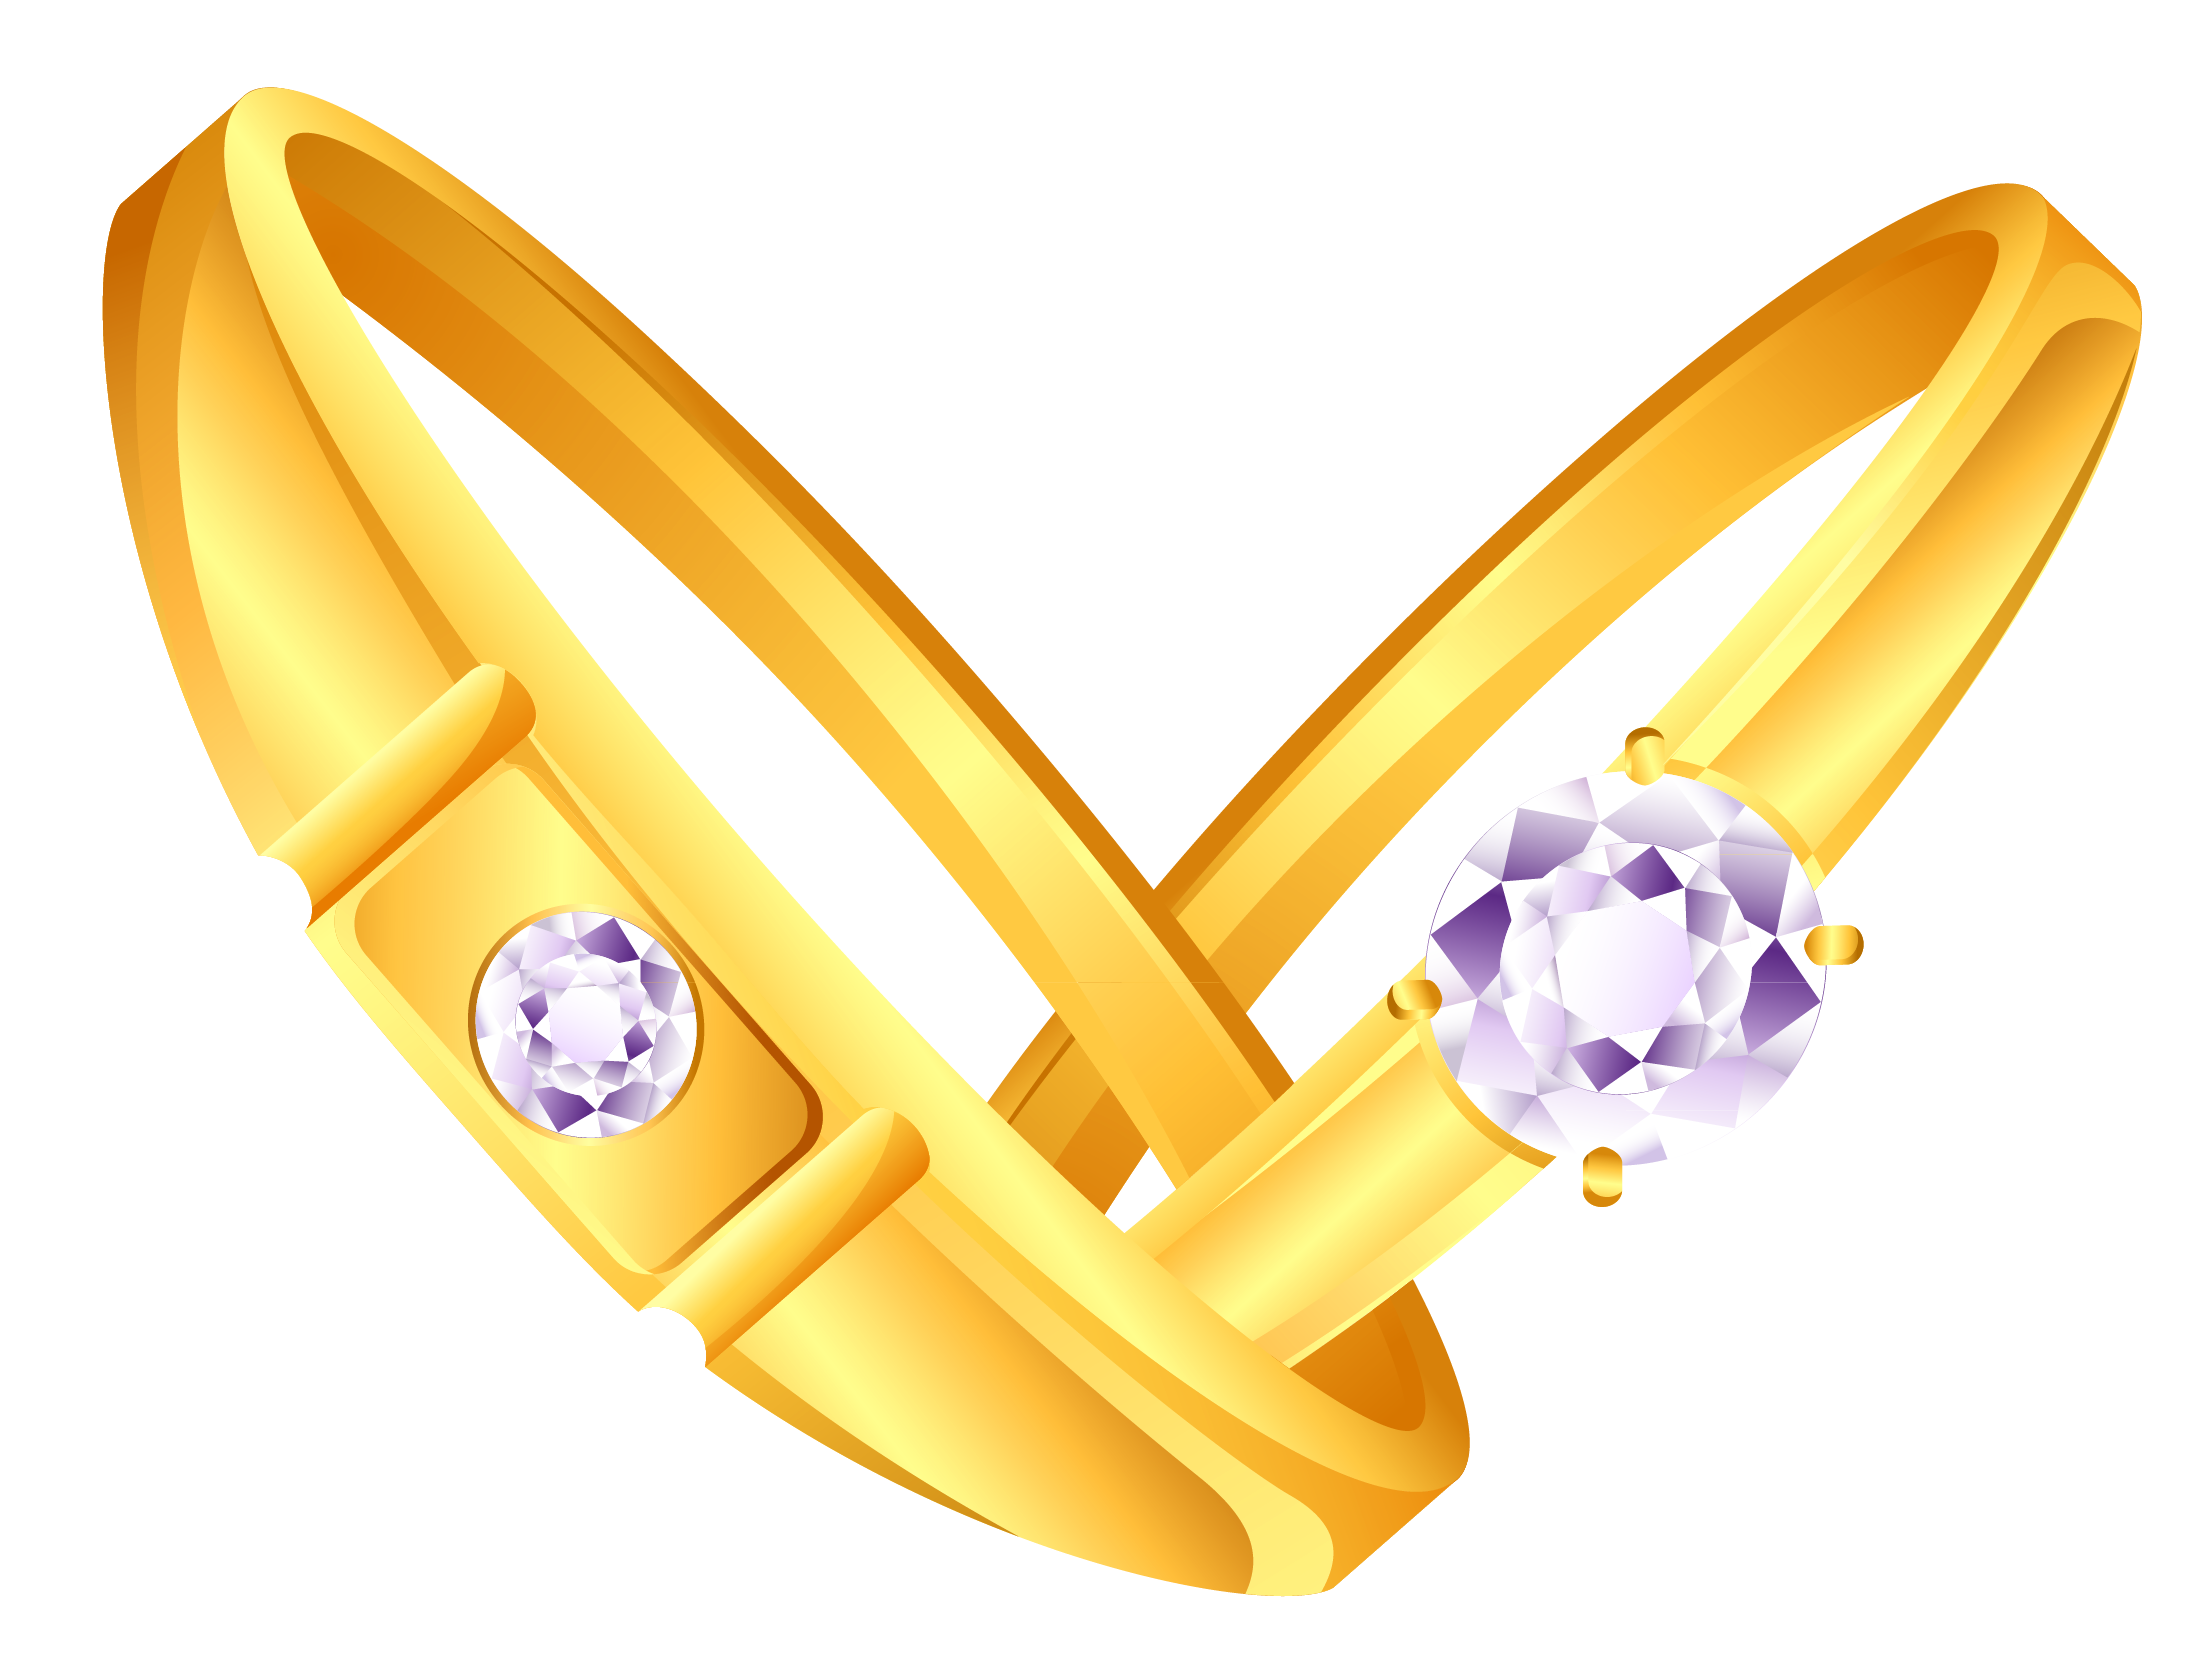 Cincin emas pernikahan